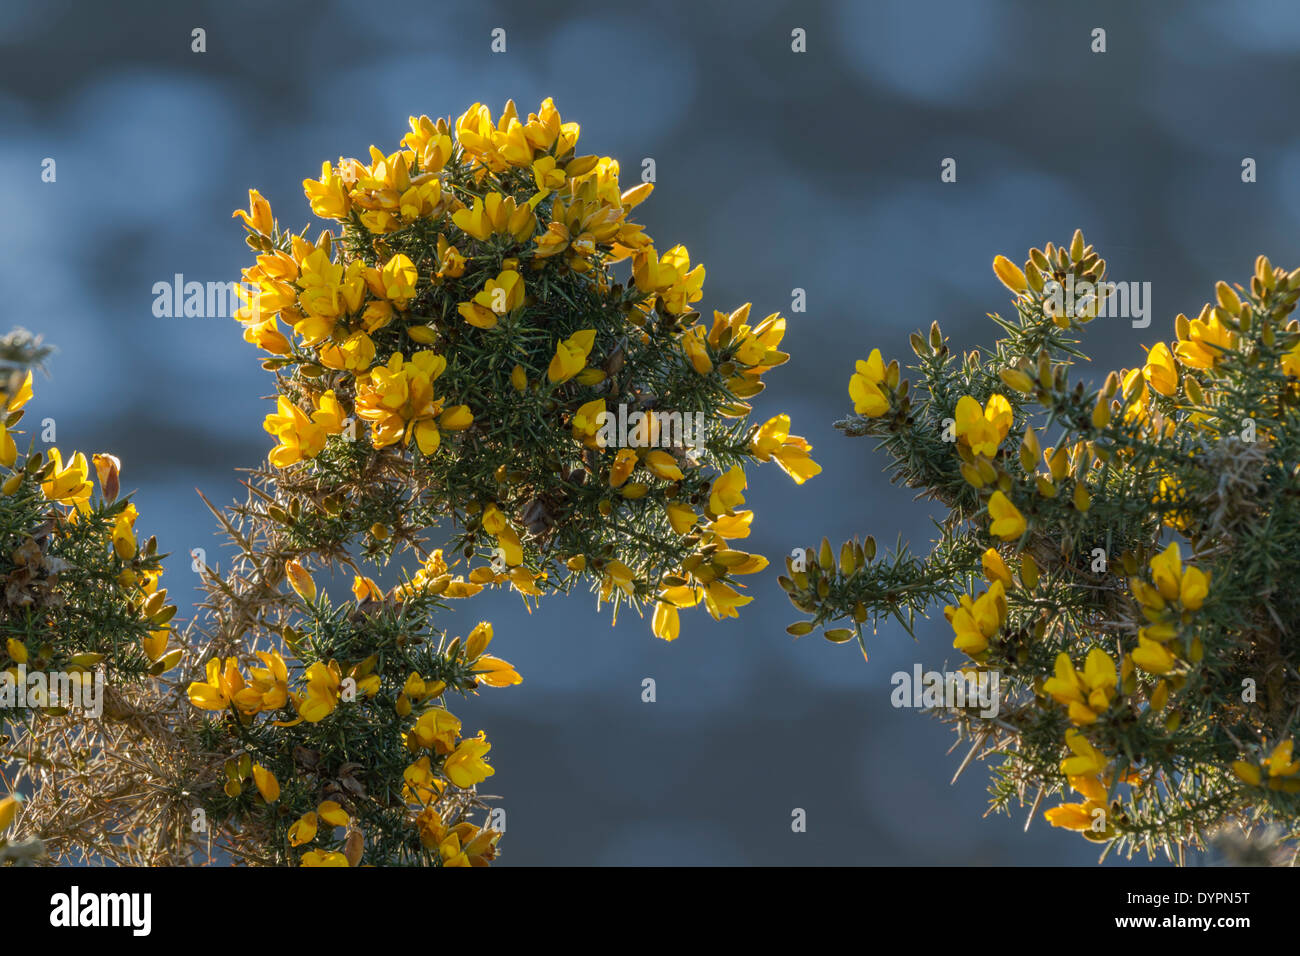 L'ajonc arbuste, nom latin Ulex europaeus, montrant des fleurs jaune vif et piquant d'épines Banque D'Images